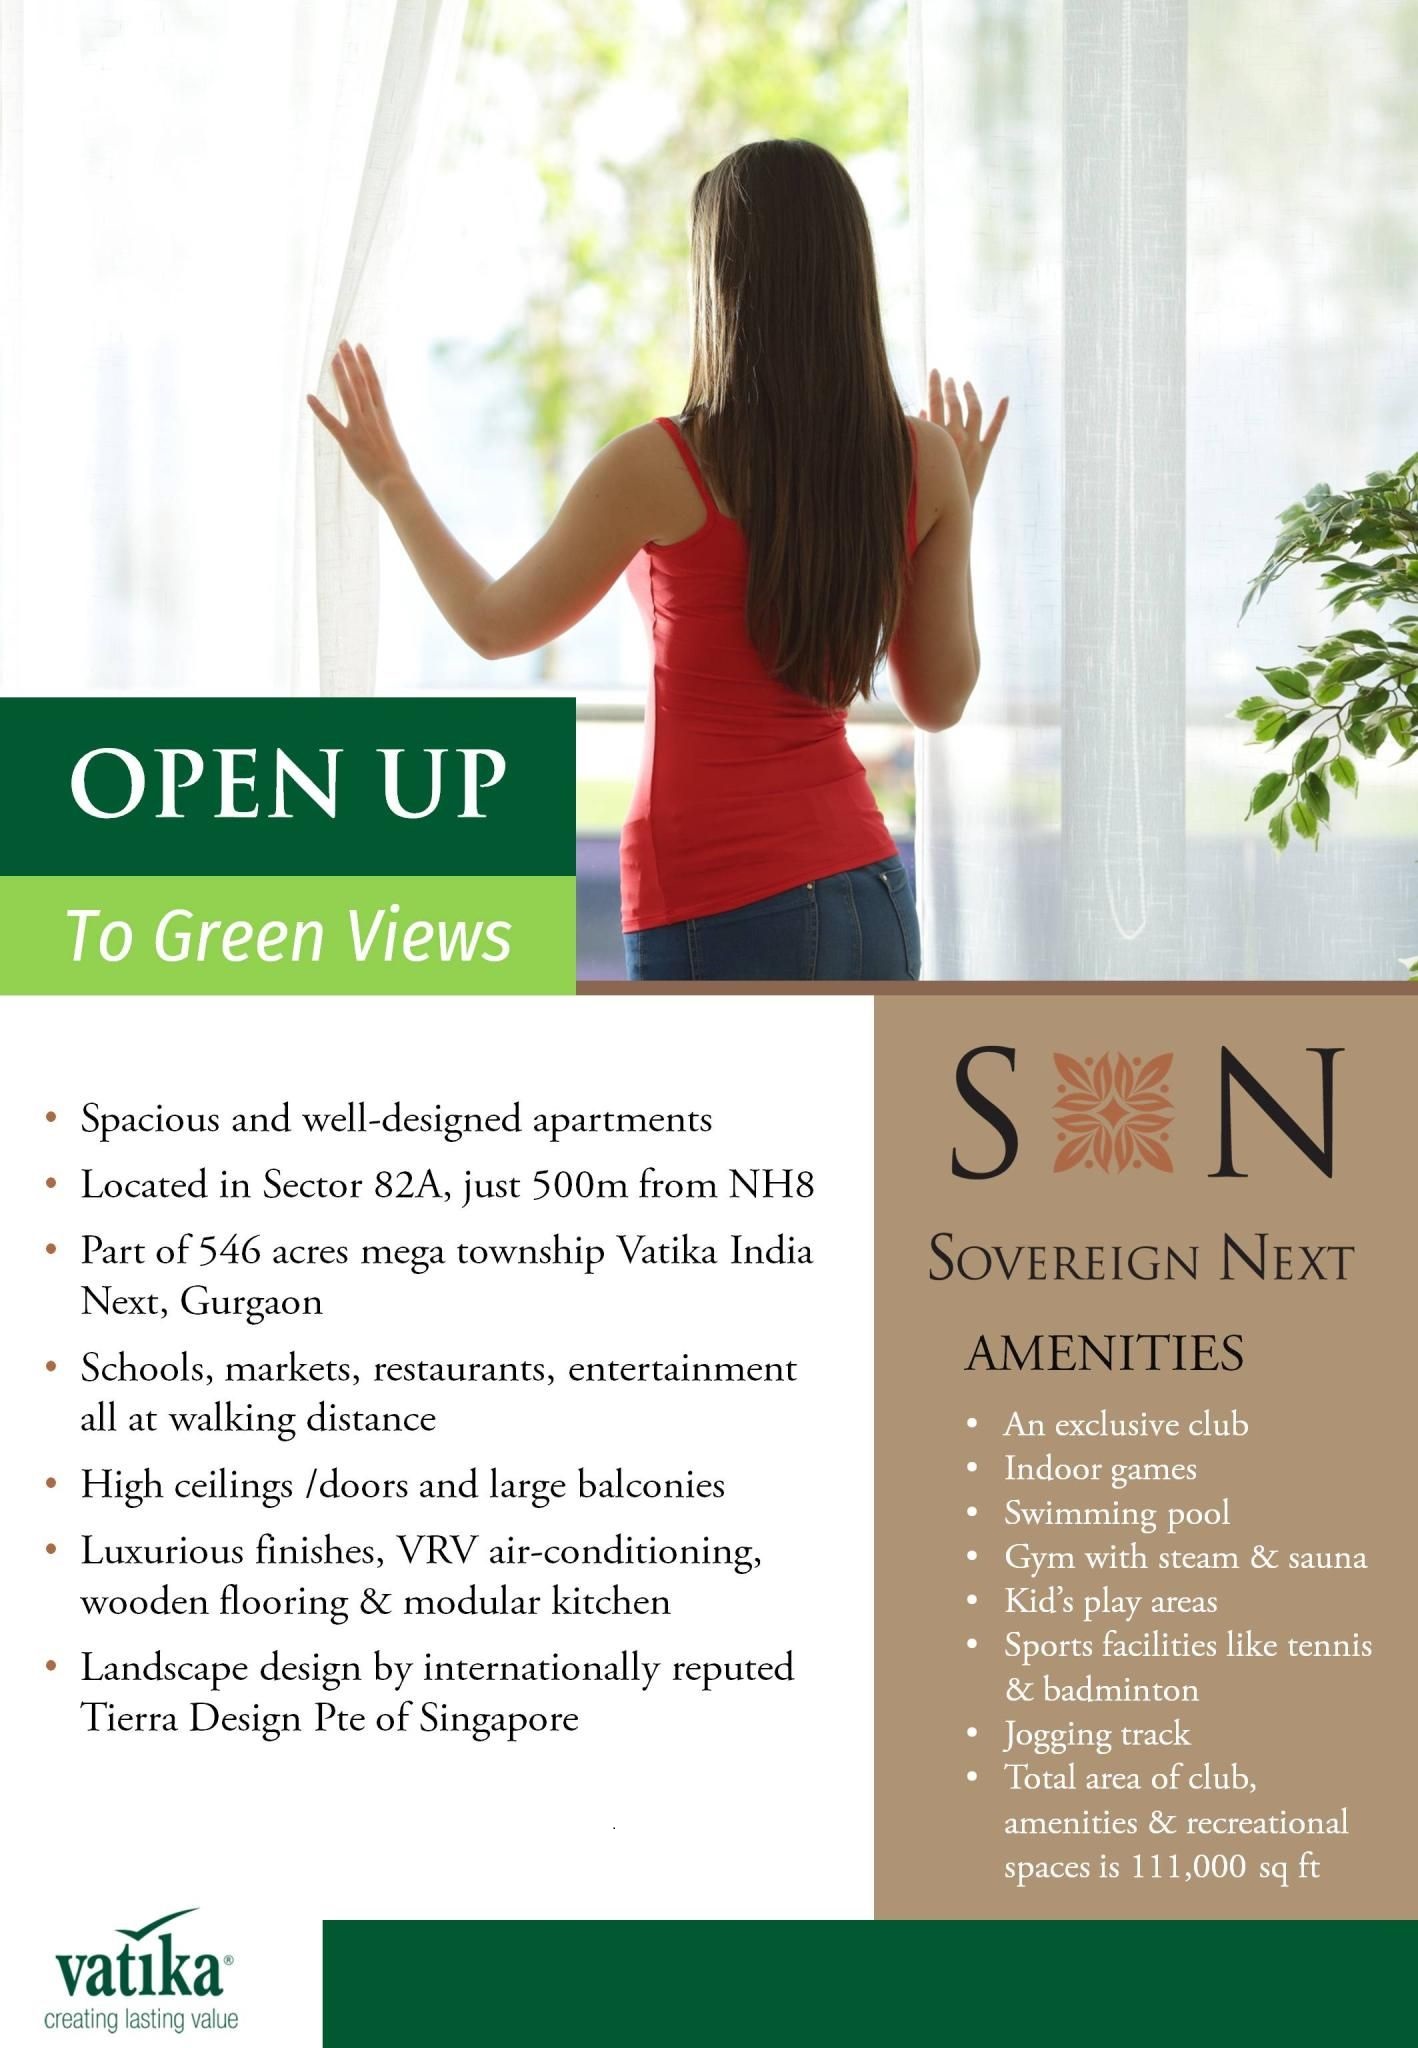 Open up to green views at Vatika Sovereign Next, Gurgaon